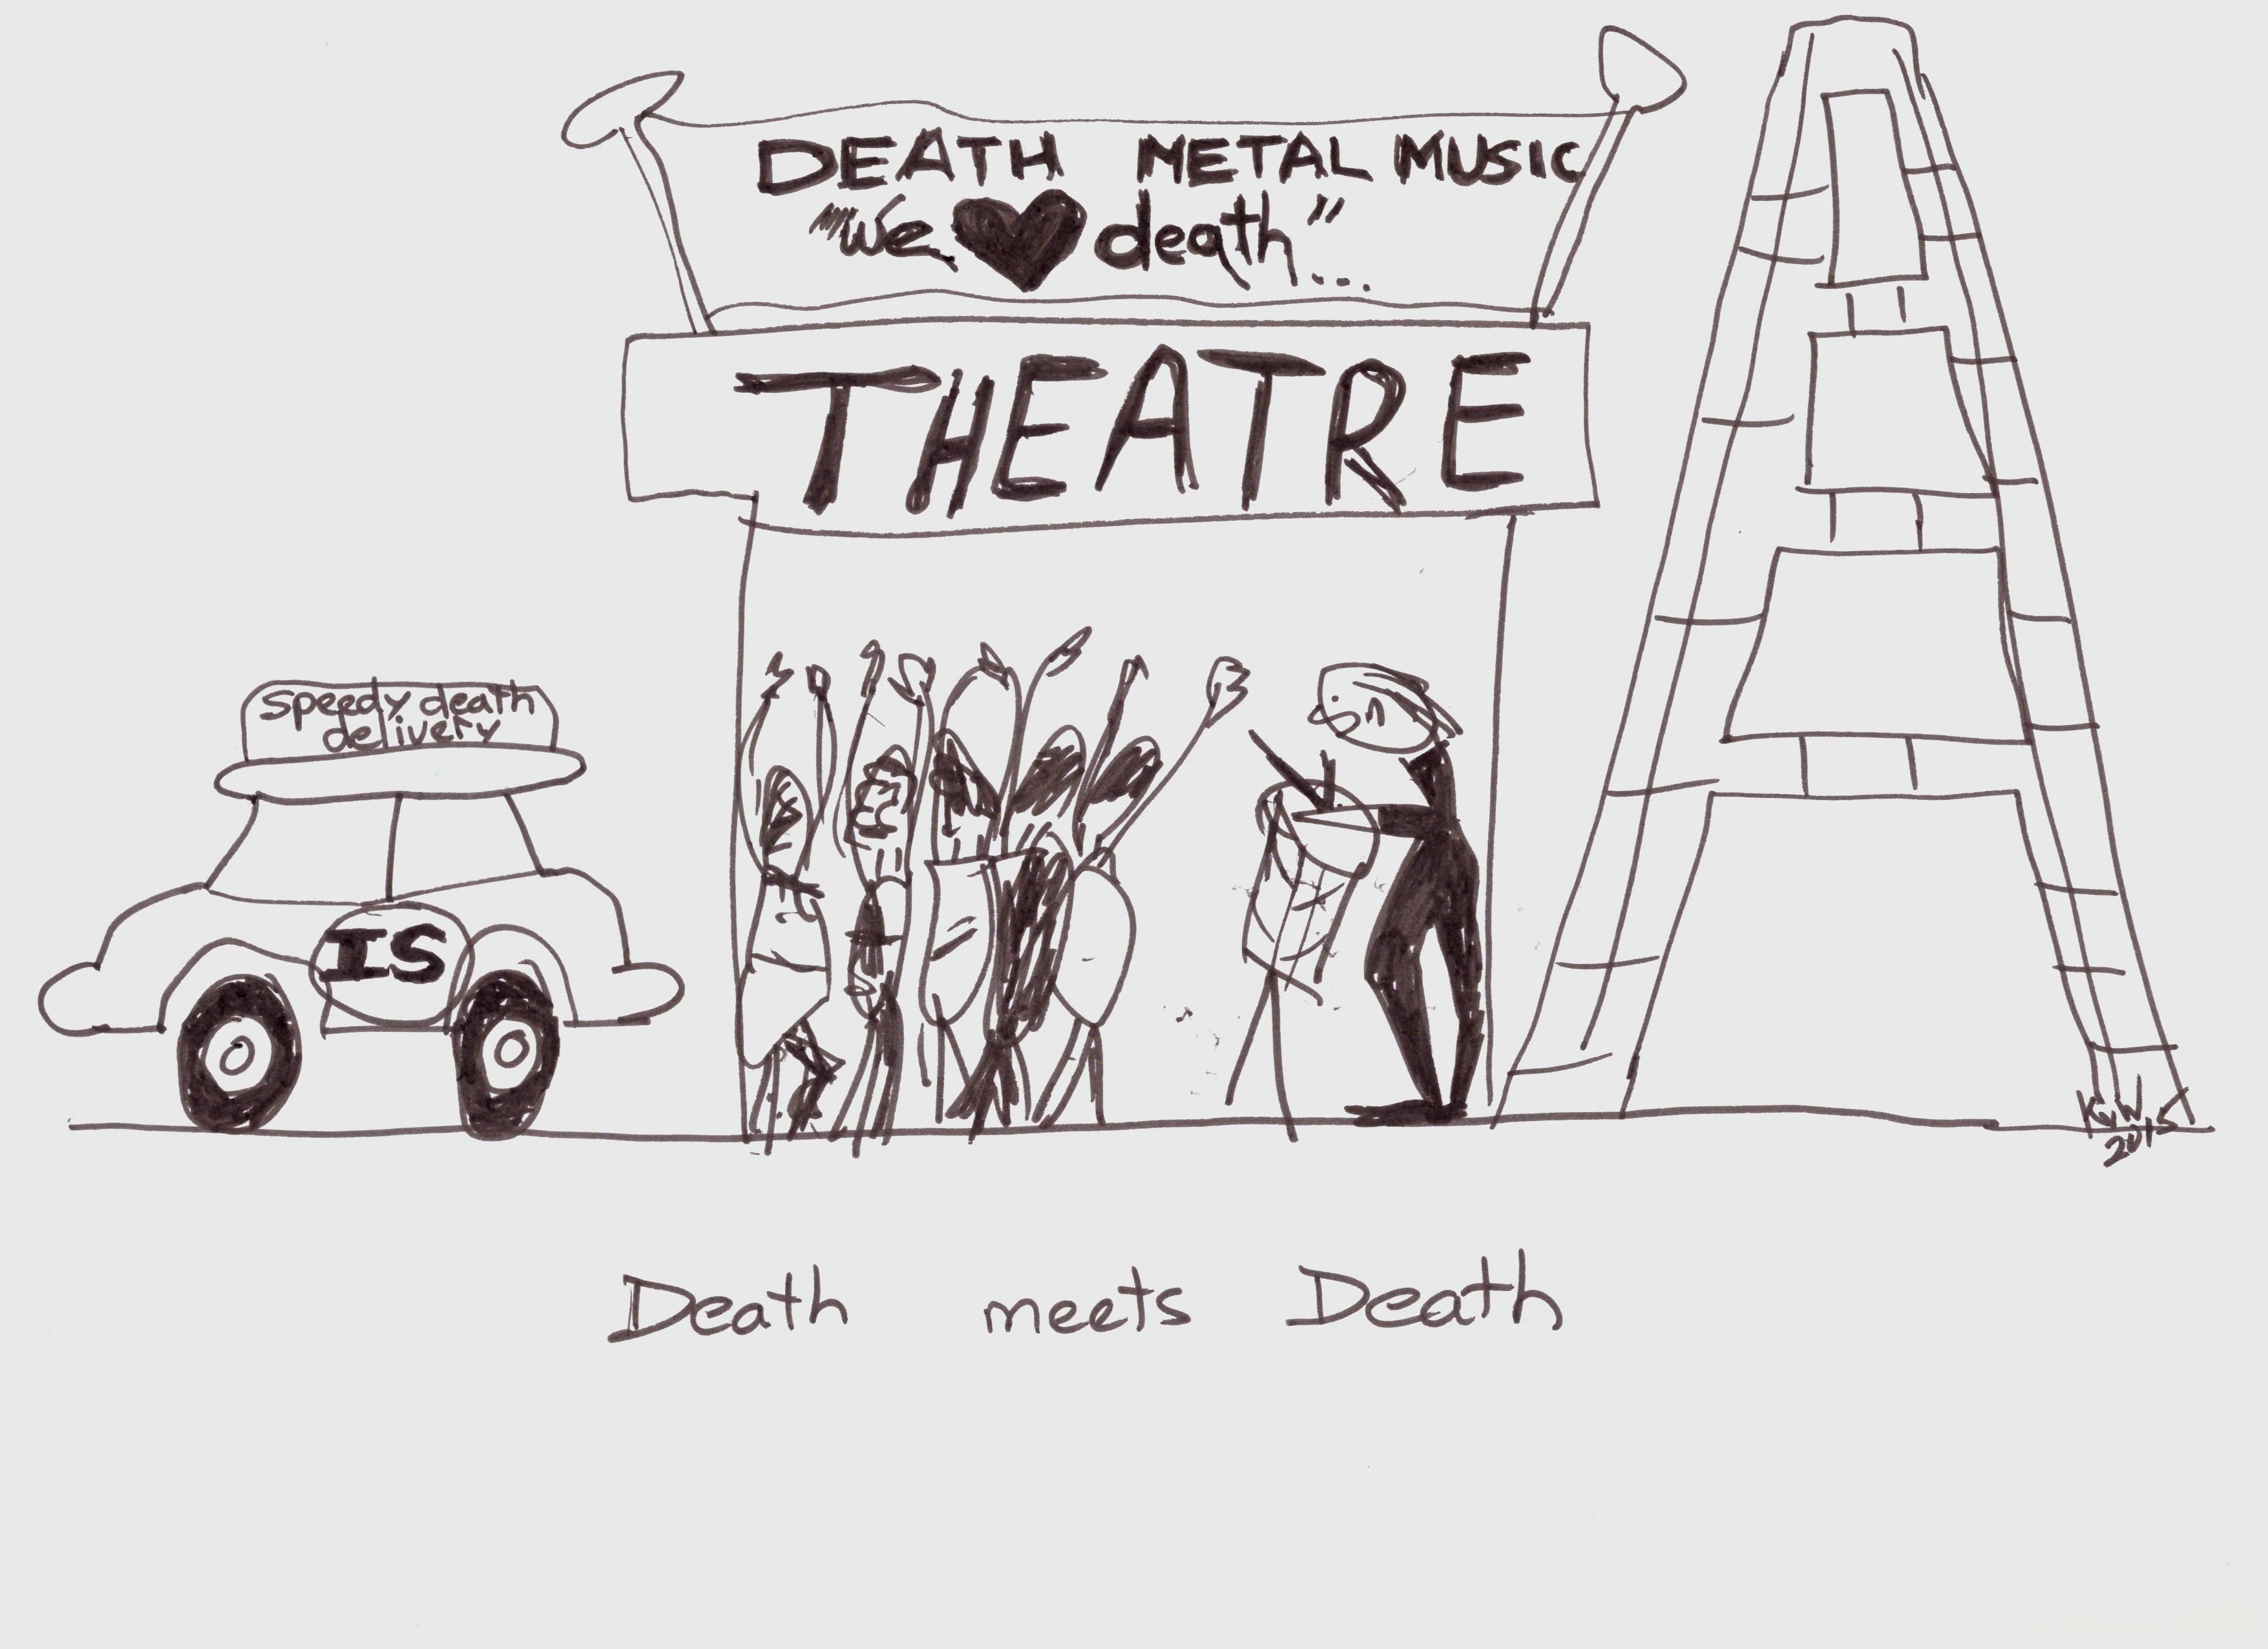 Death meets Death Cartoon.jpeg